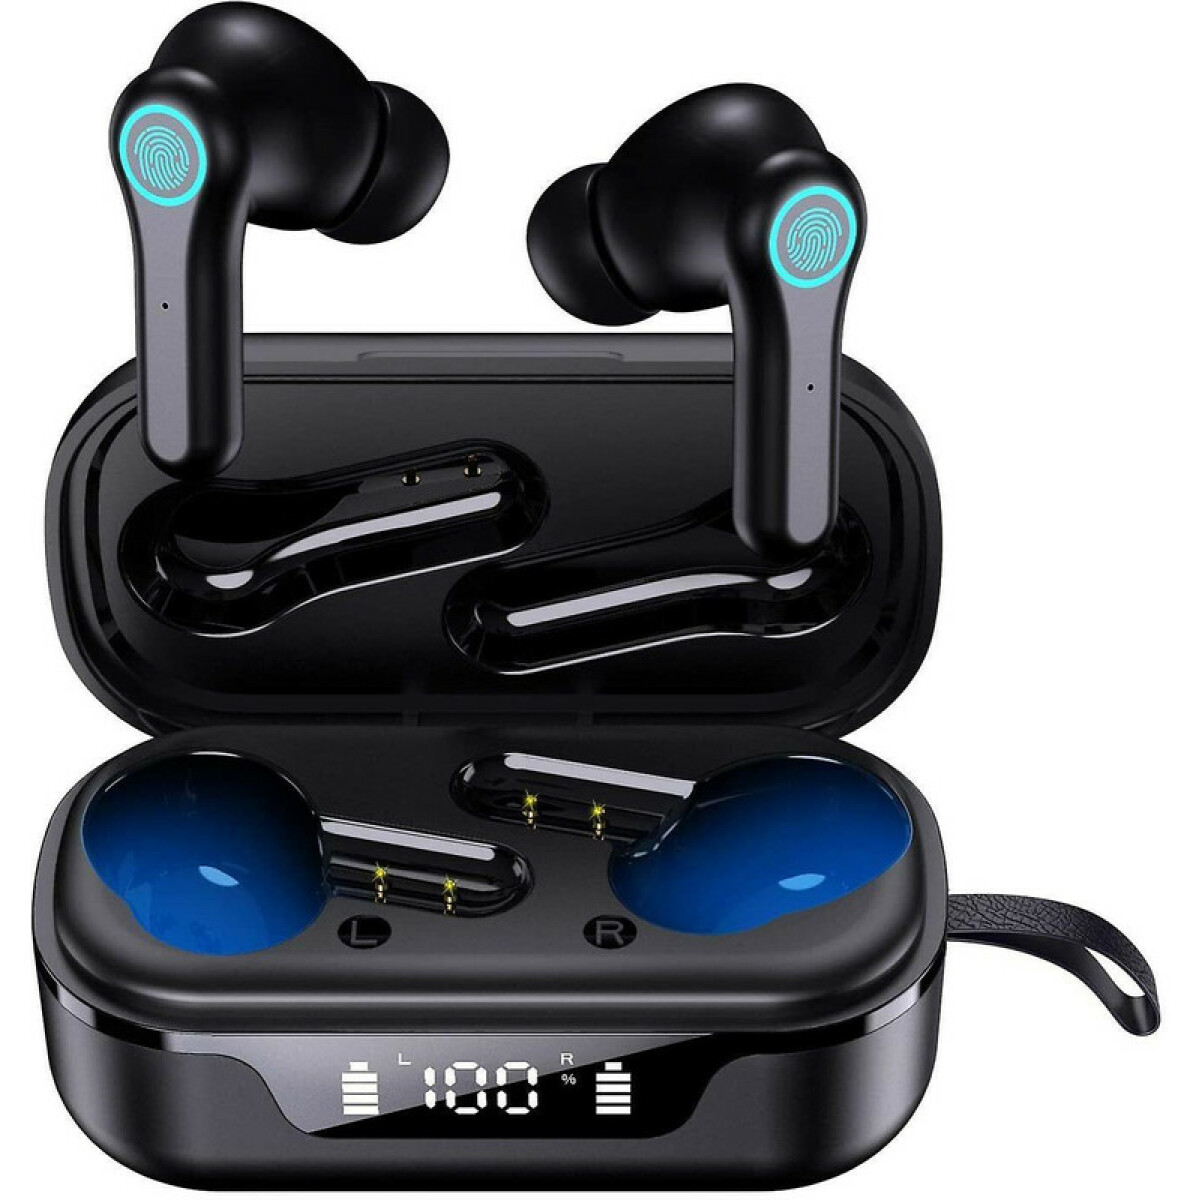 Ecouteur Bluetooth, Écouteurs sans Fil Bluetooth 5.1 avec Mini Boîtier (30g) TWS Stéréo Oreillette Bluetooth 30h d'Autonomie, Contrôle Tactile, USB-C Charge Rapide IPX7 Étanche Casque Sport(Noir)